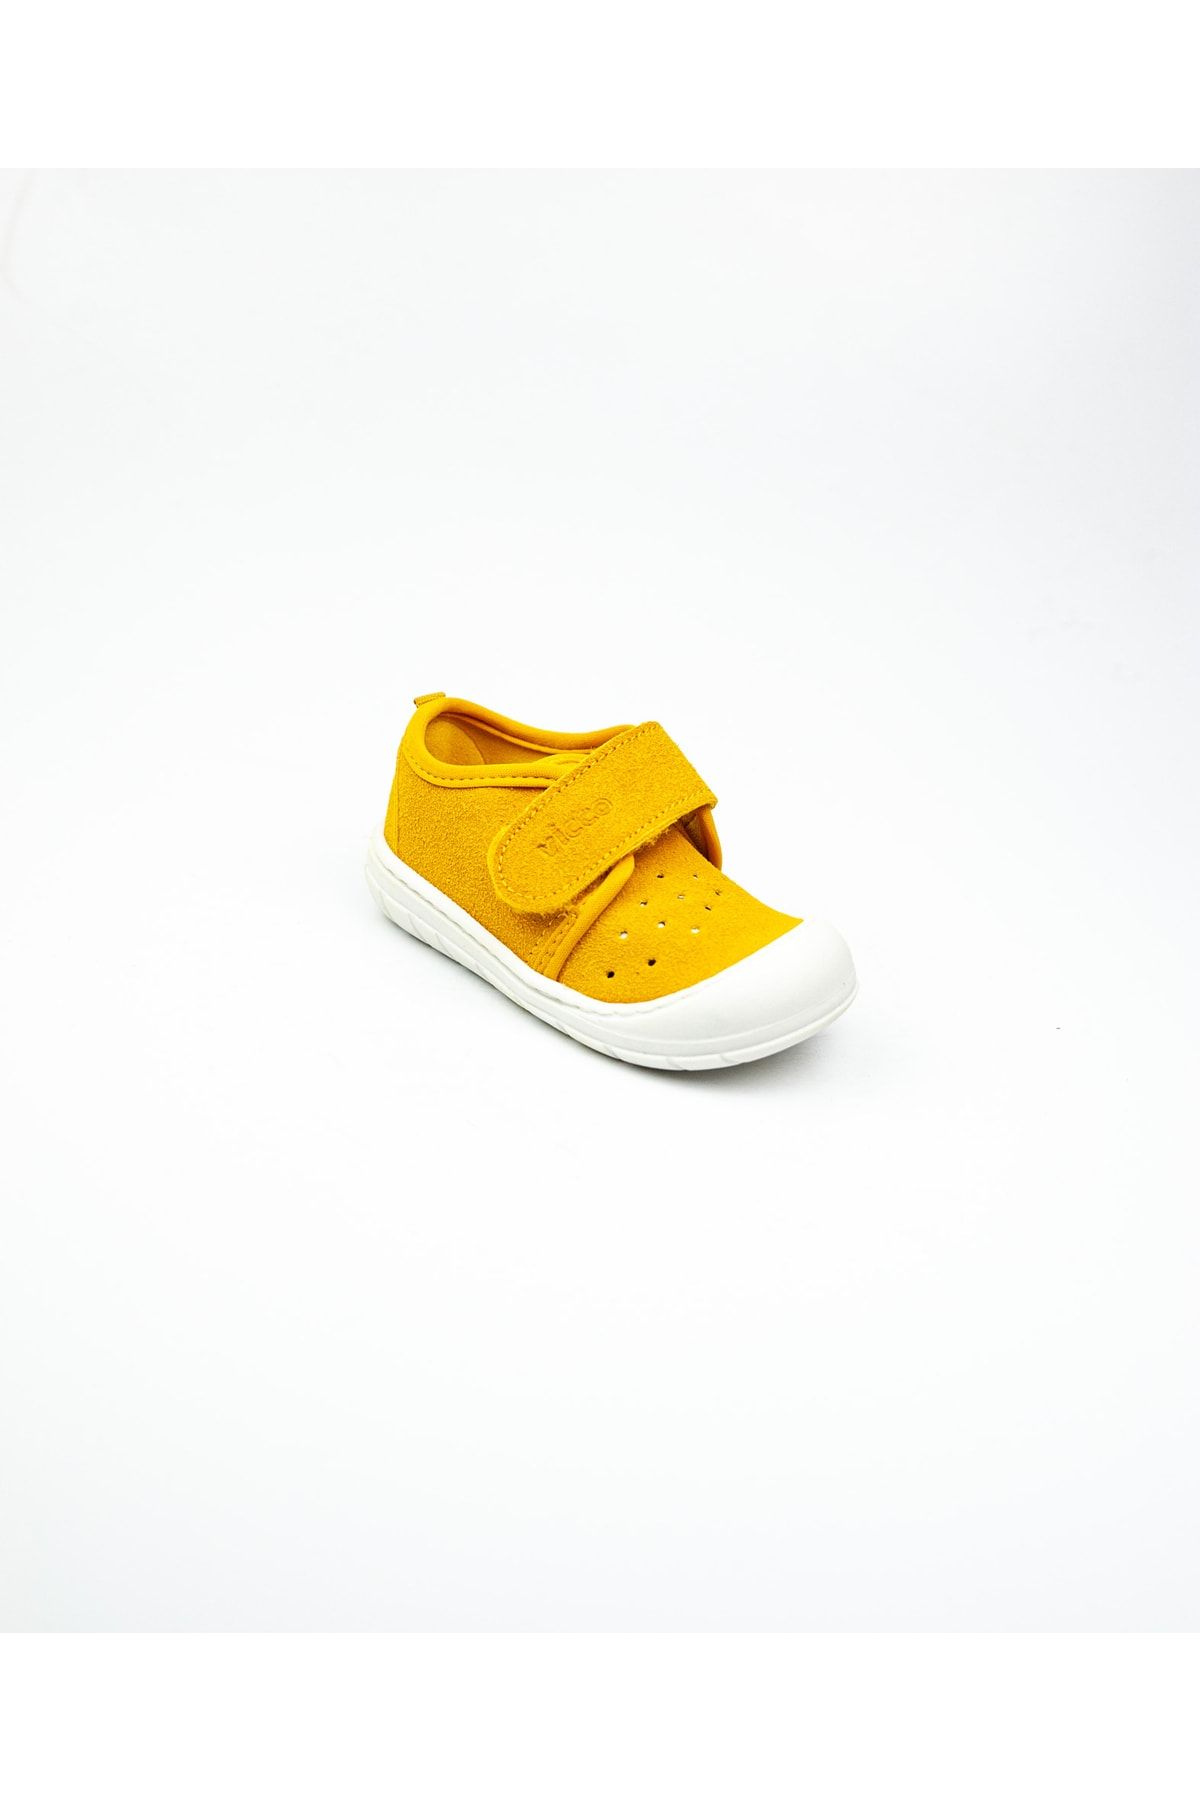 Vicco 950. B21k. 225 Anka Sarı Deri Bebek Ayakkabı